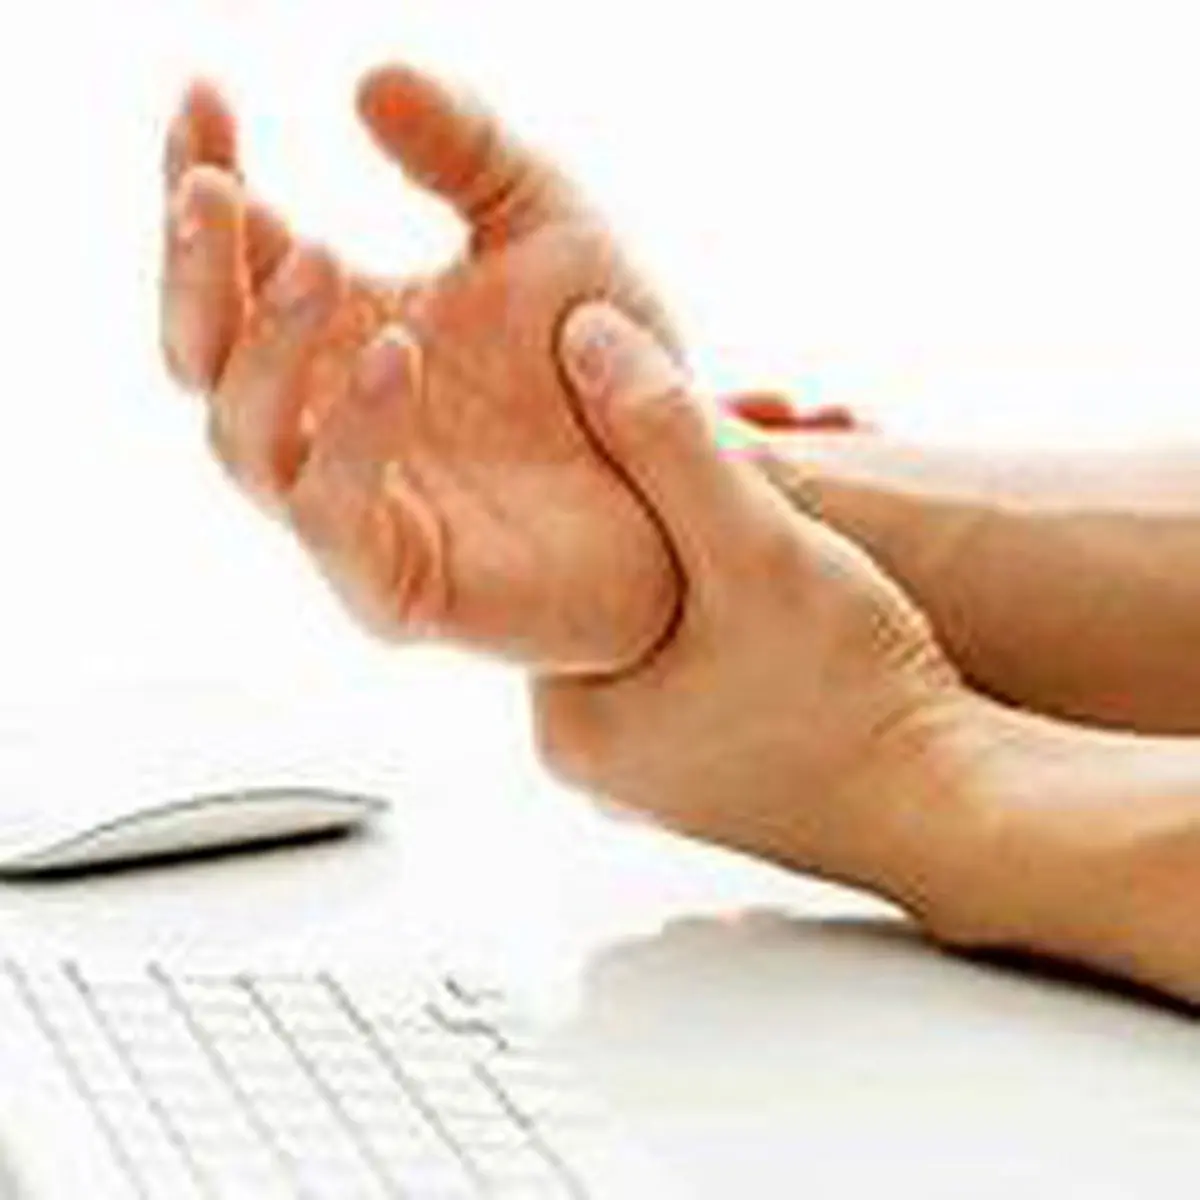 علت احساس درد در انگشتان و دست چیست؟